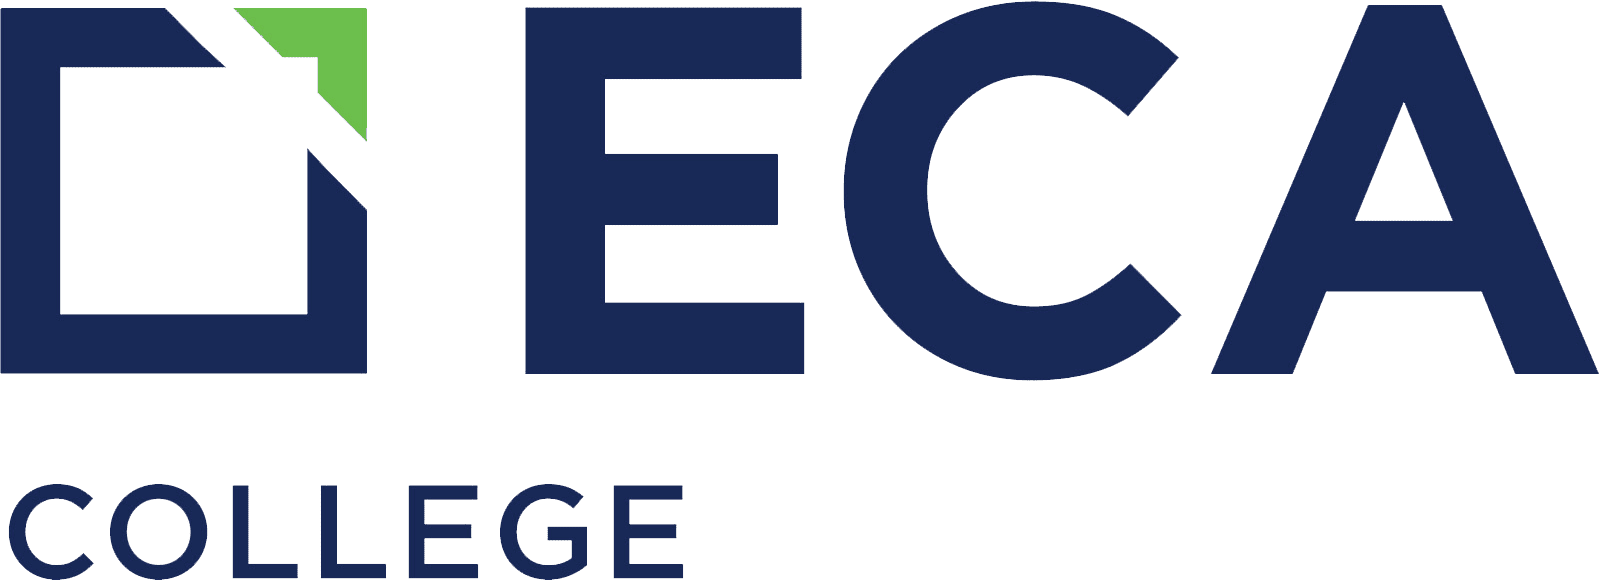 ECA College Transparent Logo